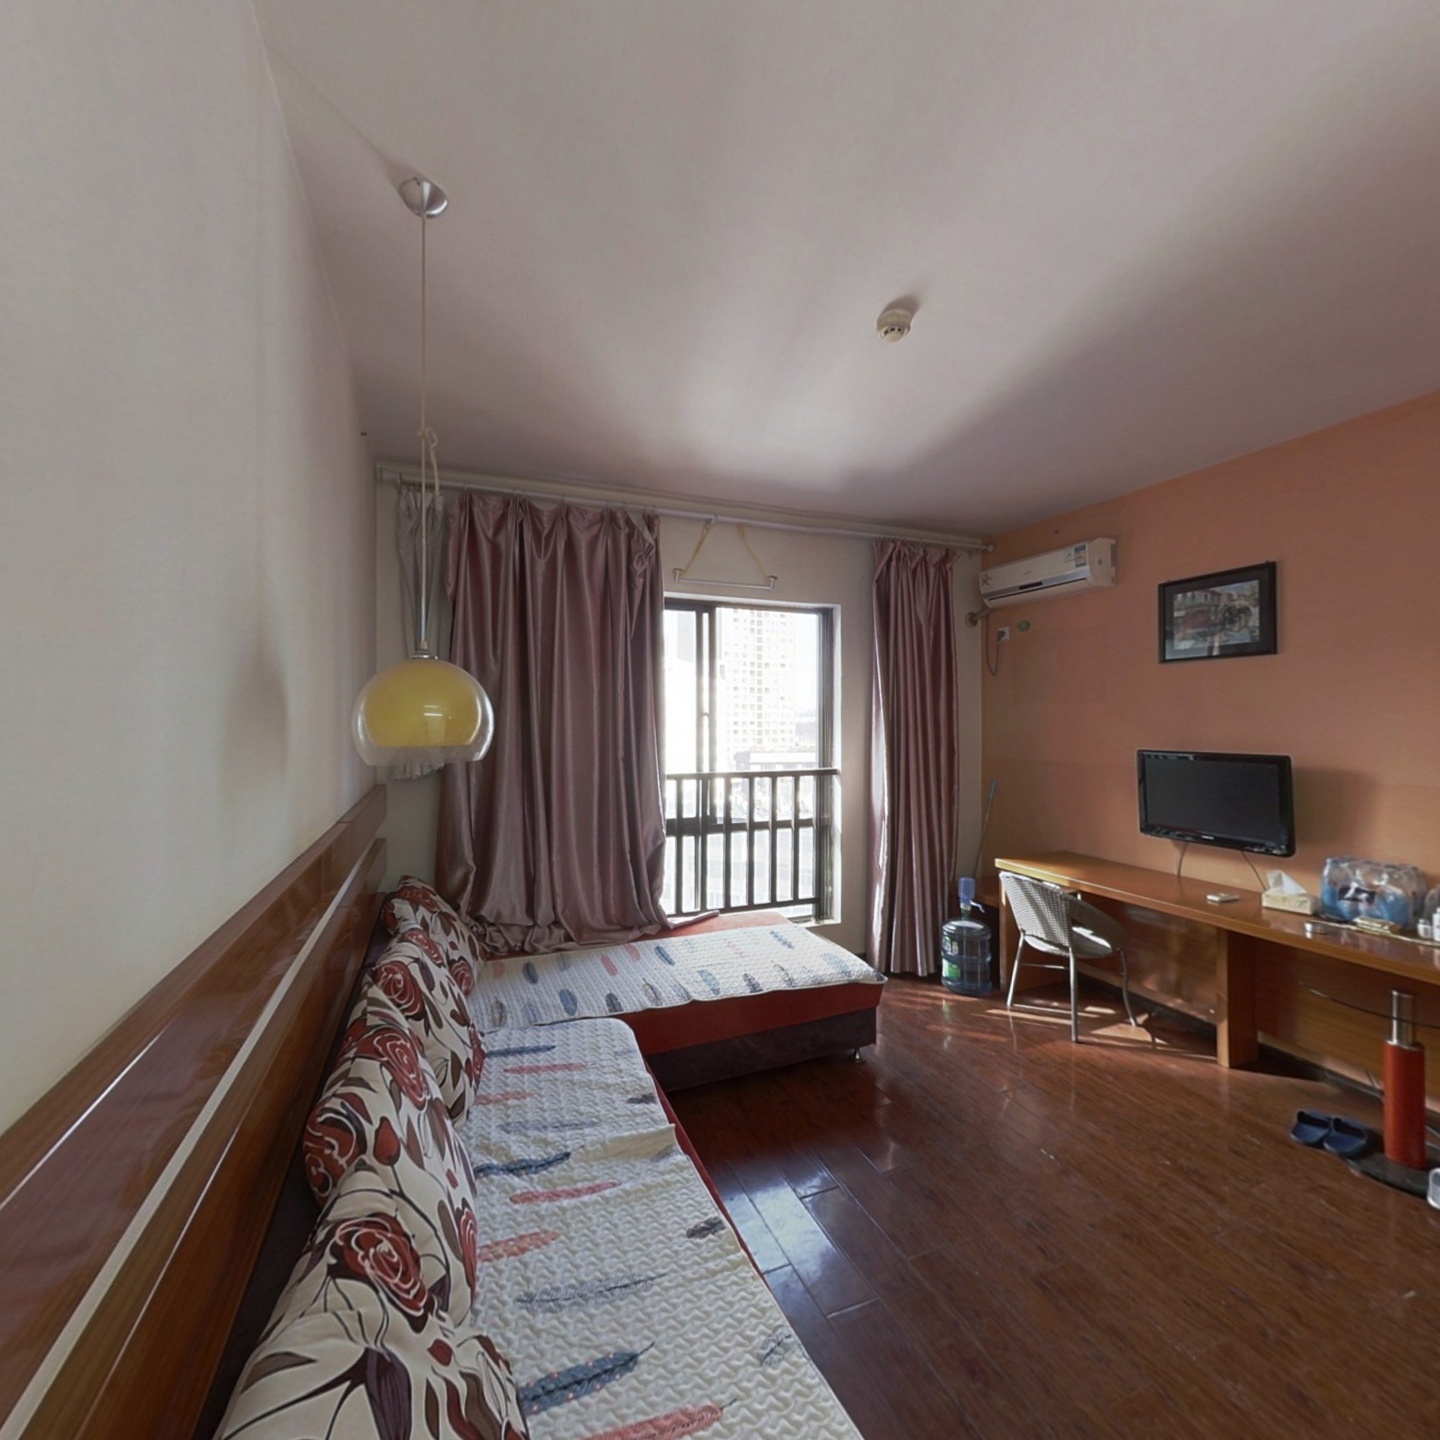 民航路边上海沙龙三期精装标准一室一厅公寓品质小区